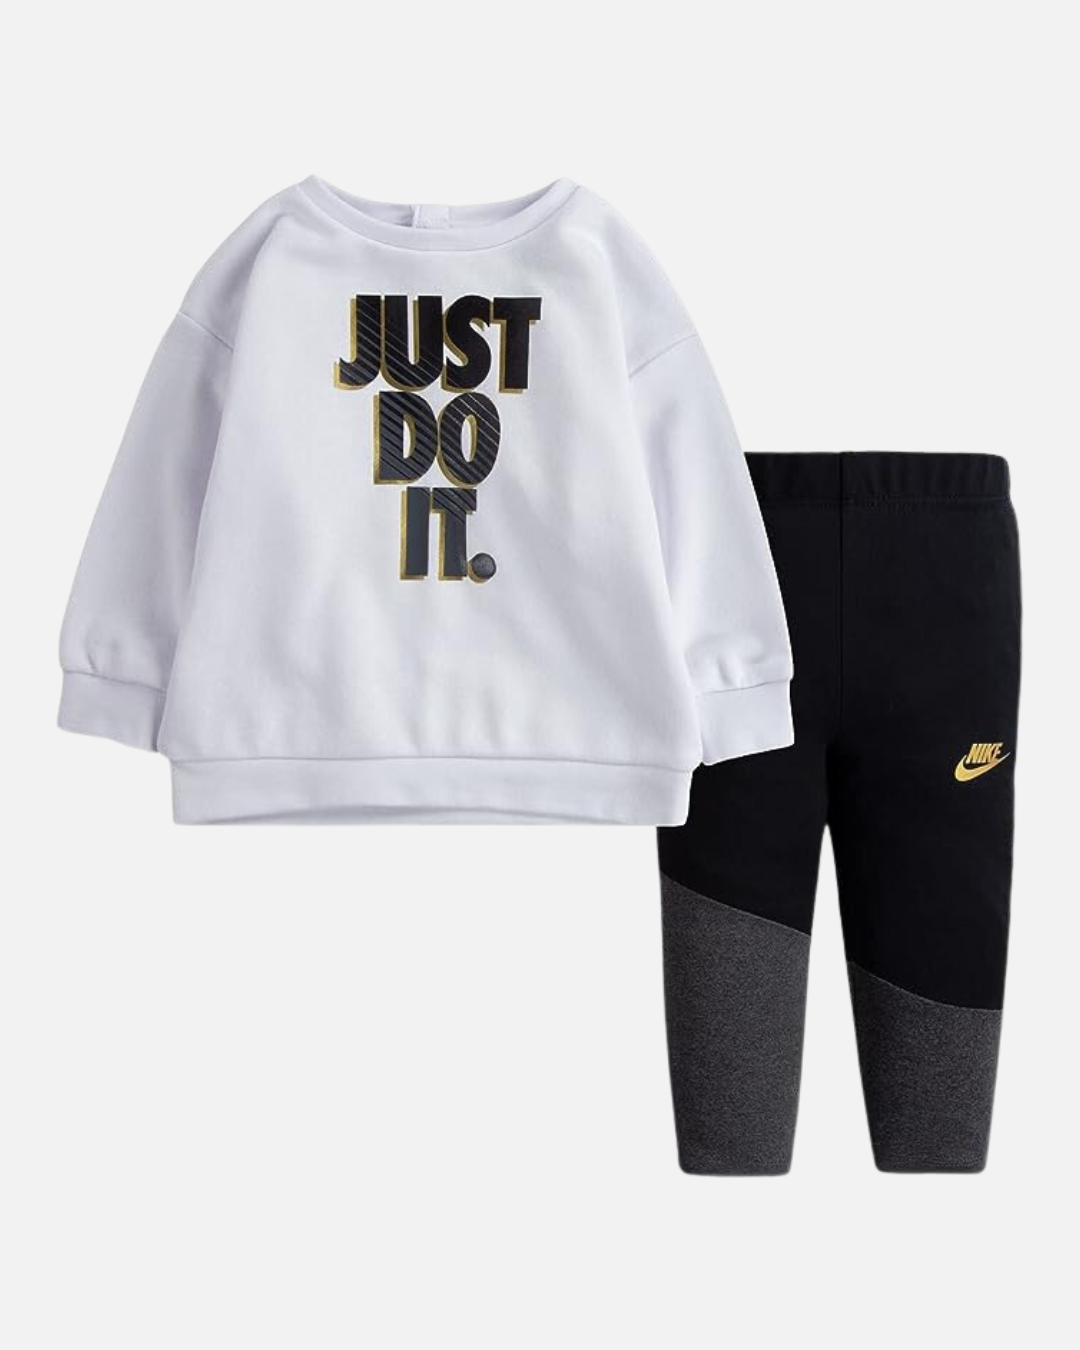 Ensemble Nike Sweat et Legging Bébé - Blanc/noir/Doré